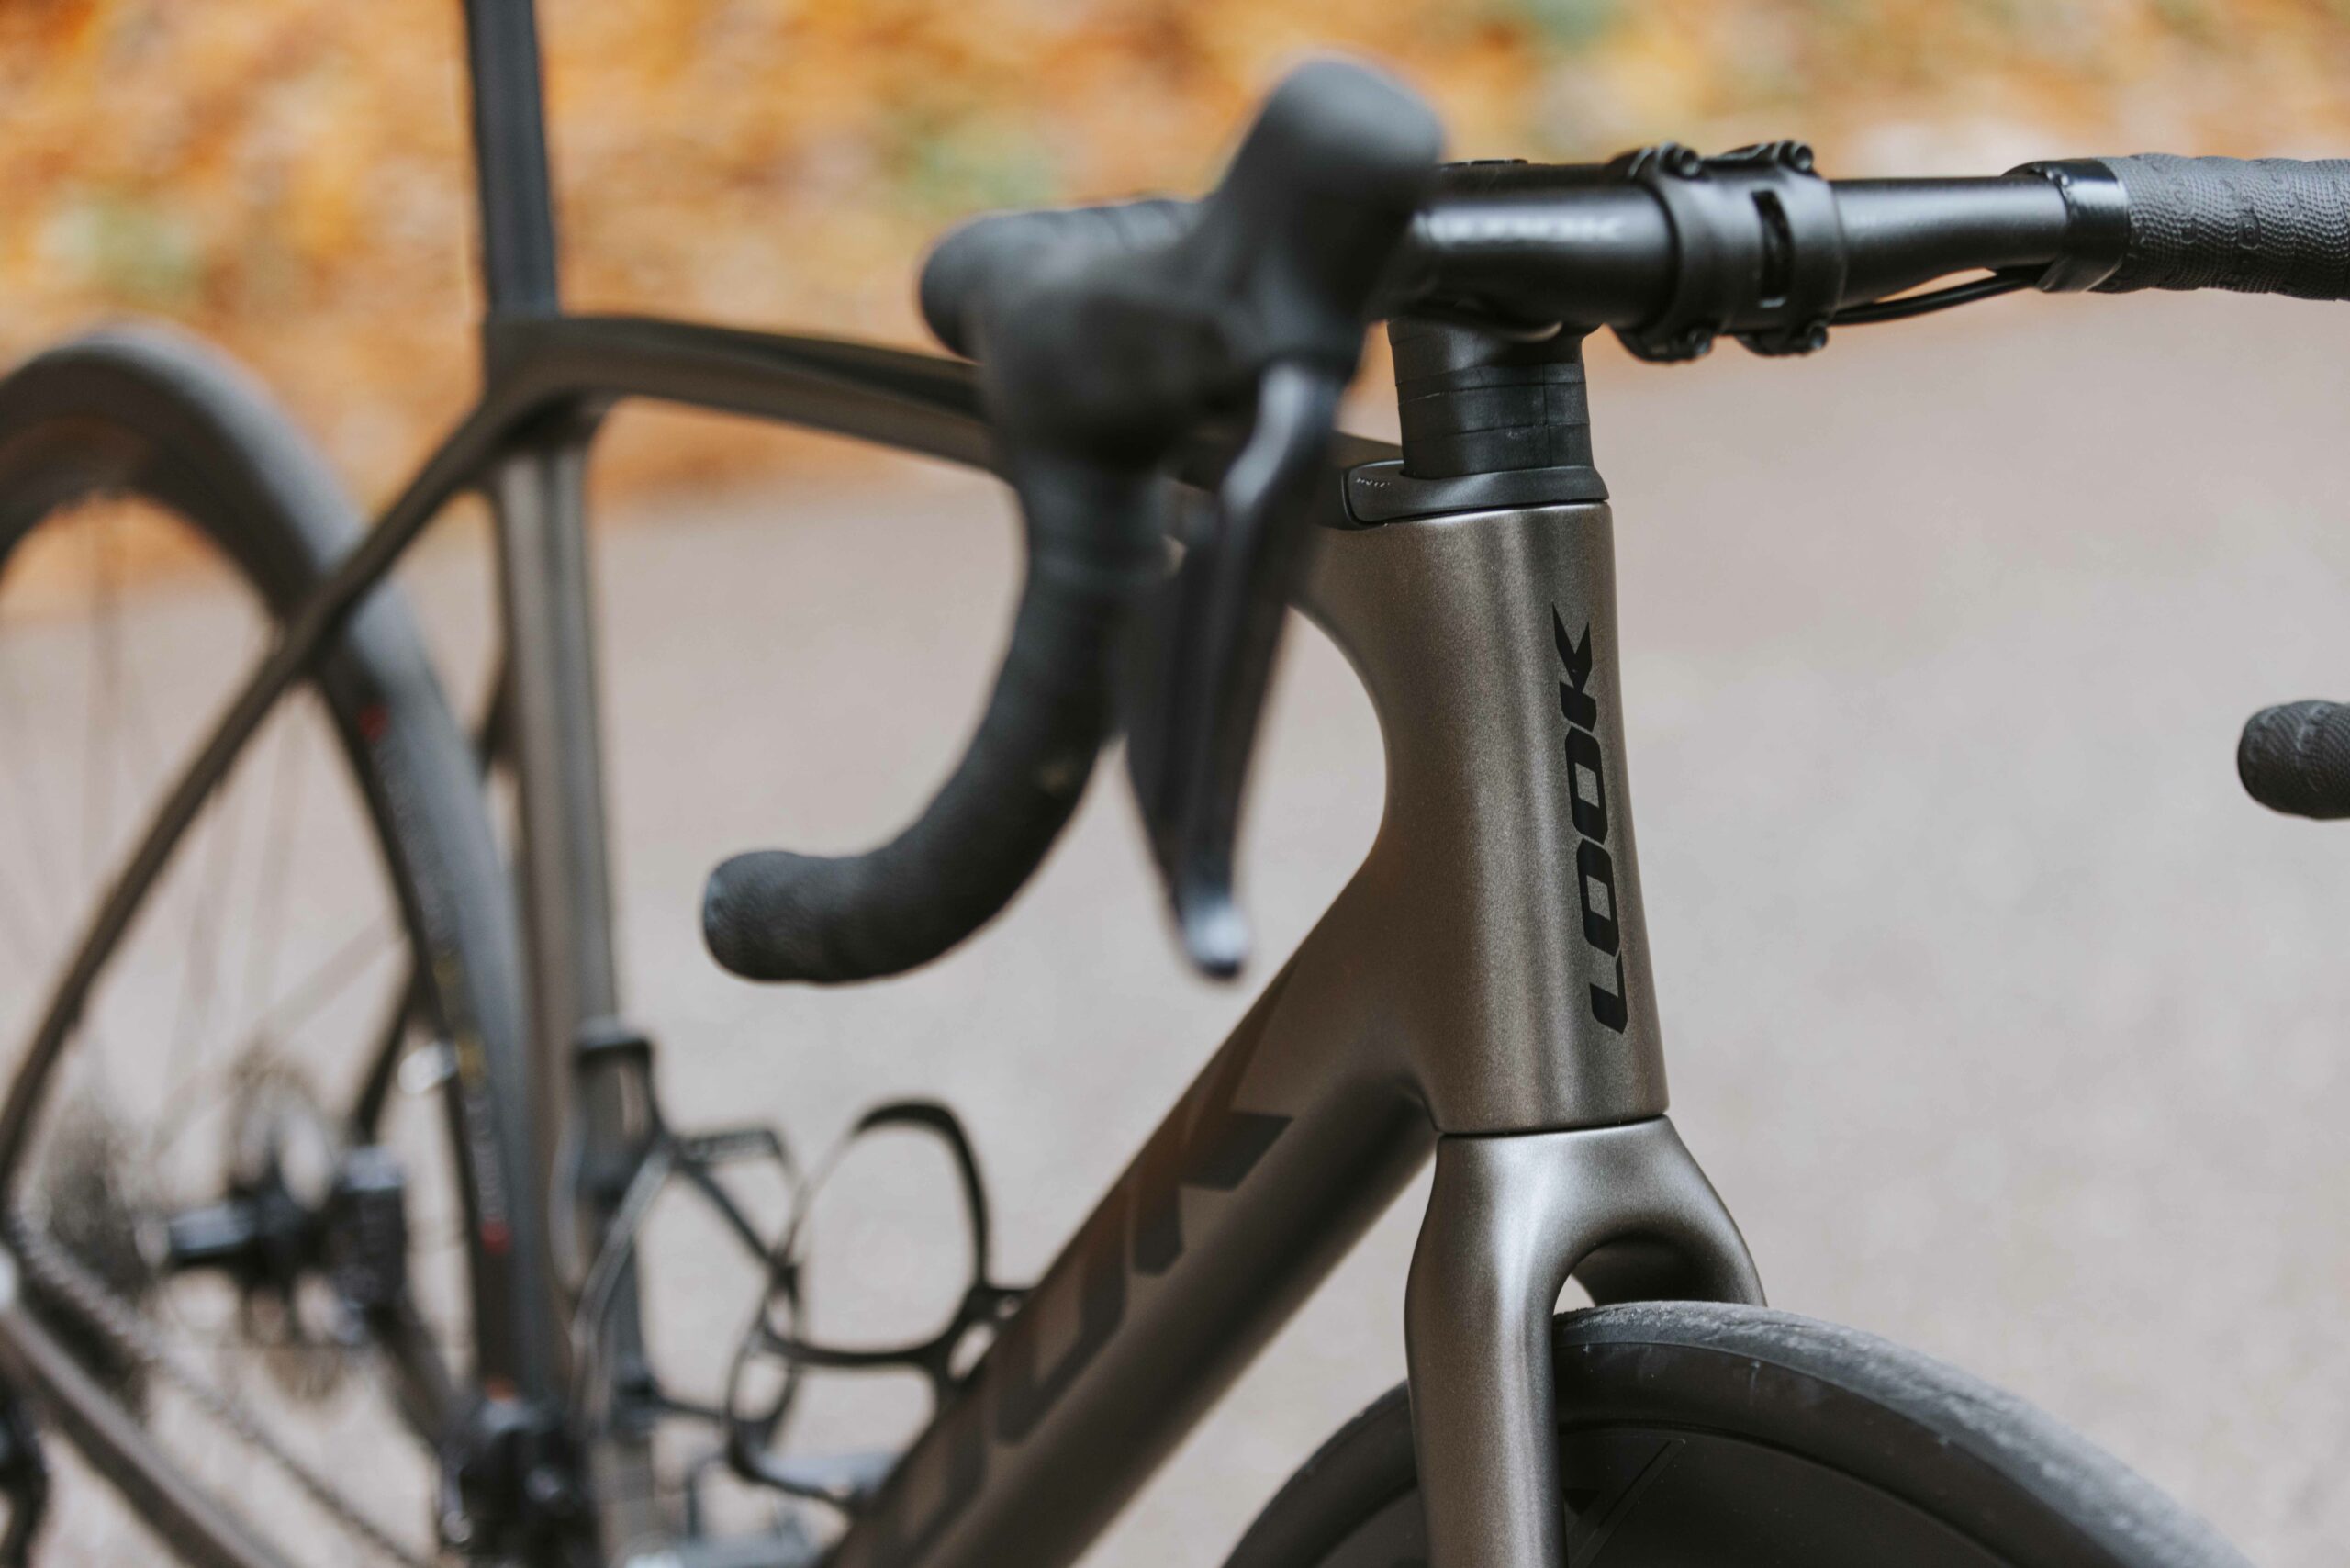 Les 5 meilleurs vélos route : la performance et l'exclusivité